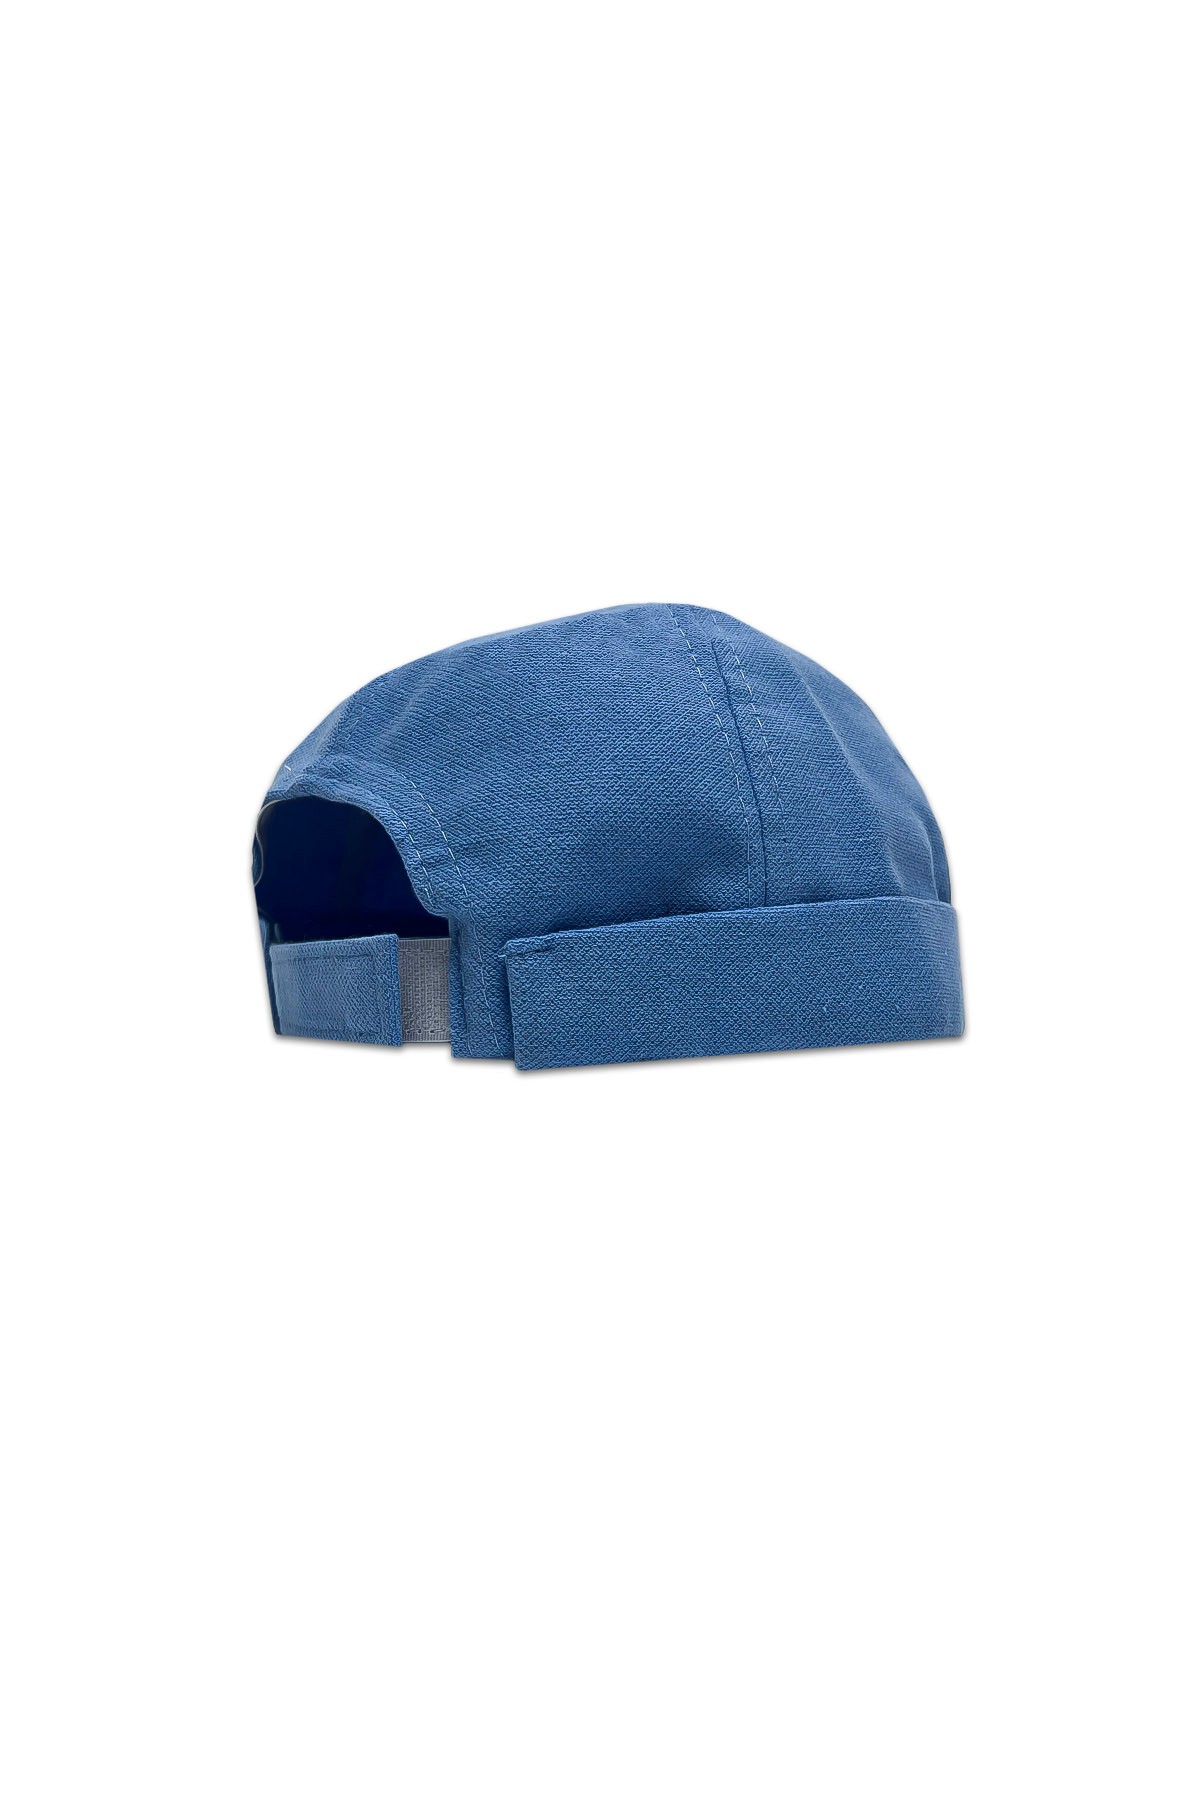 Nuo - قبعة - أزرق الطفل